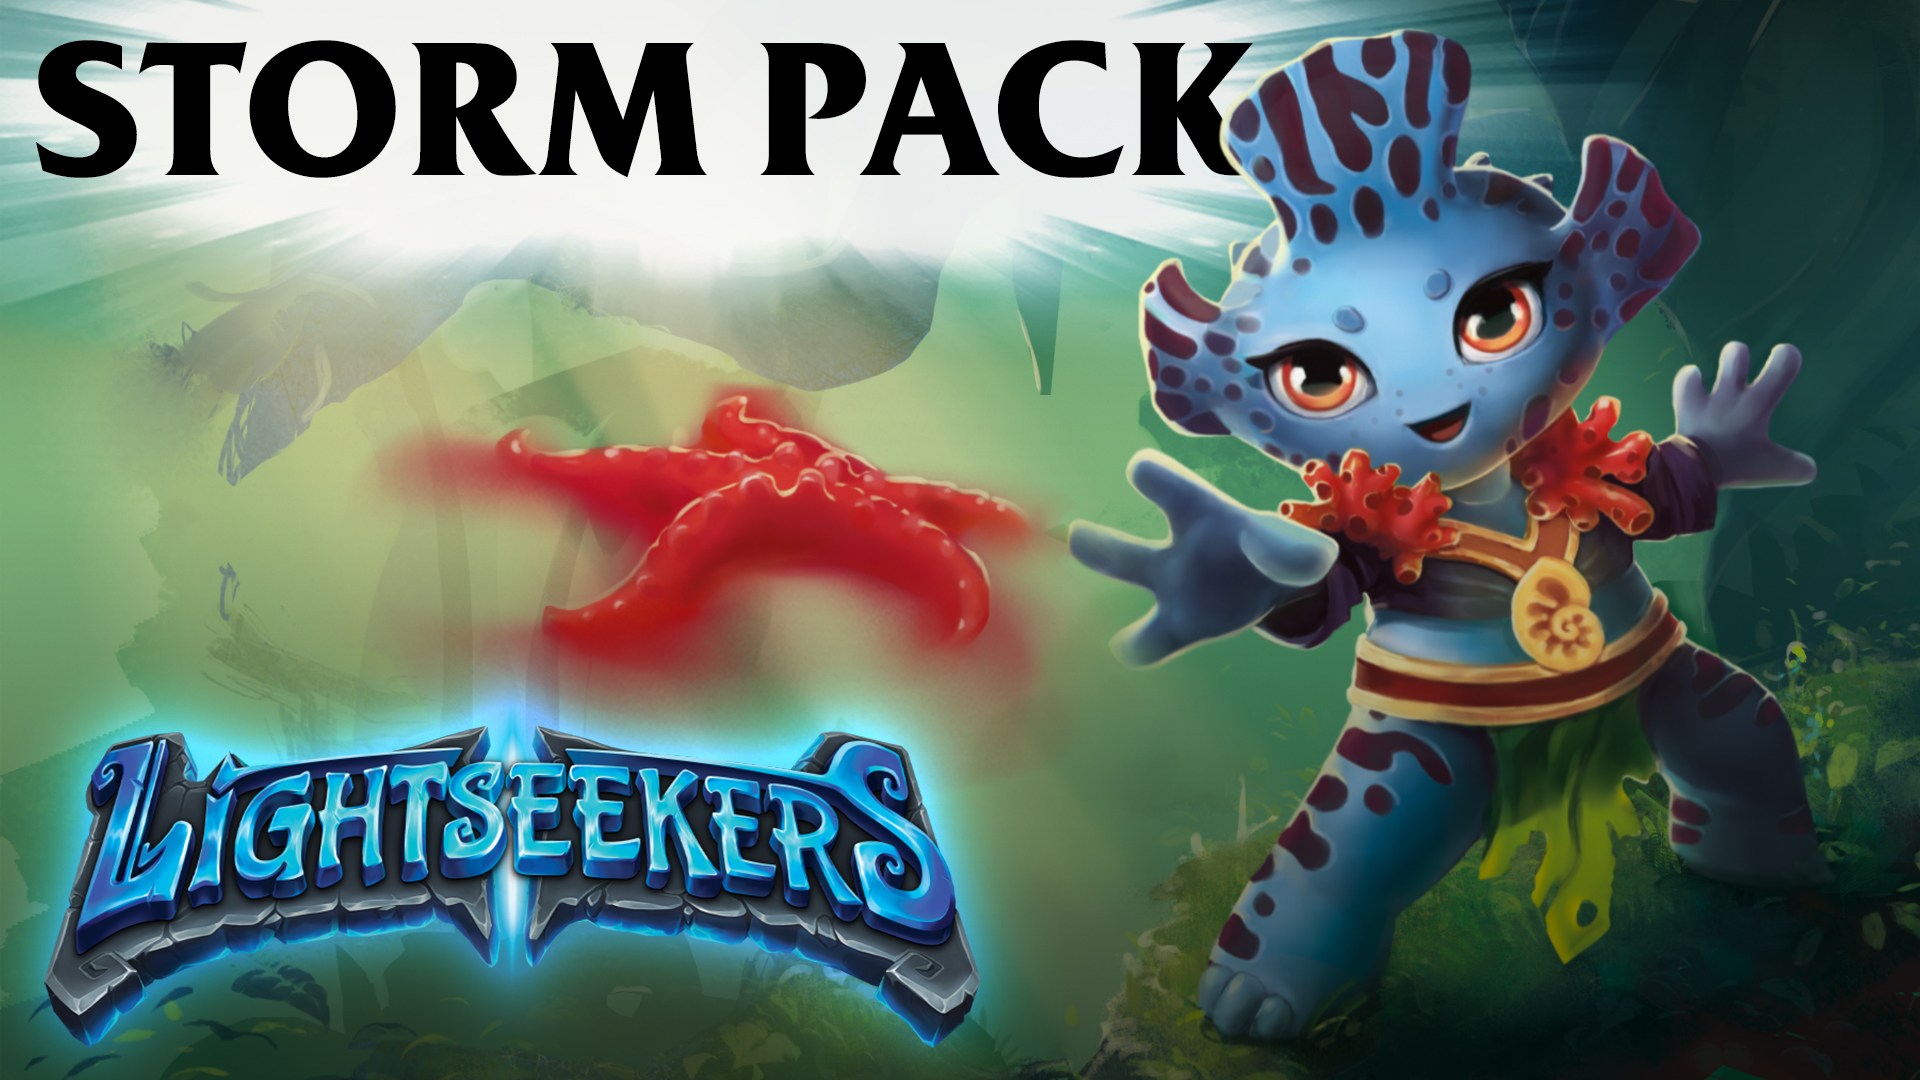 Lightseekers Storm Pack